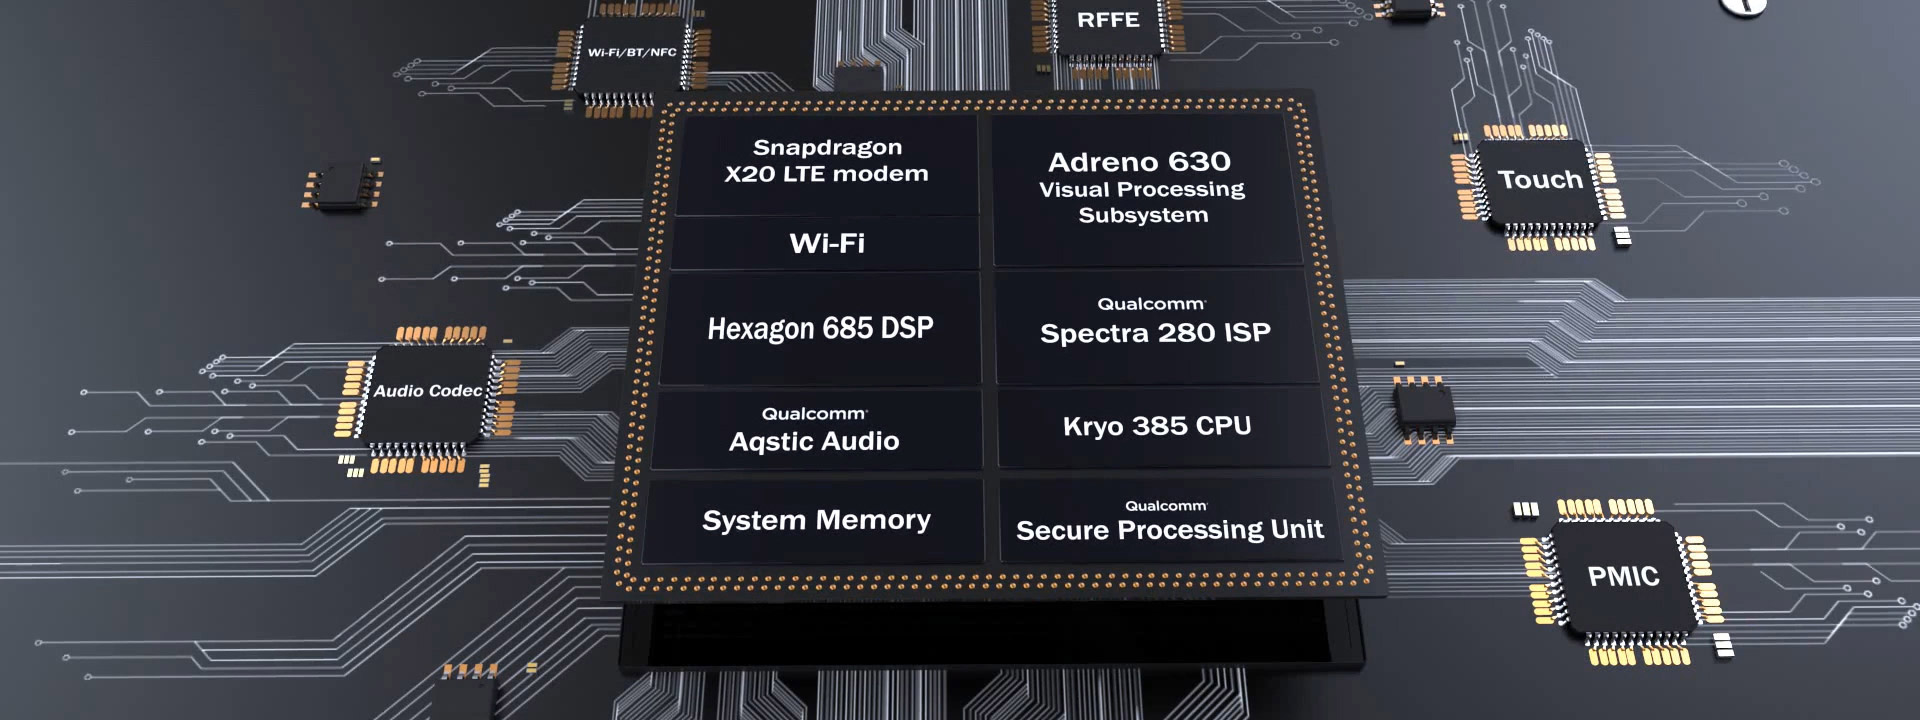 Snapdragon 845 chính thức: chụp hình đẹp hơn, video 4K HDR 60fps, chip bảo mật riêng, mạnh hơn 25%